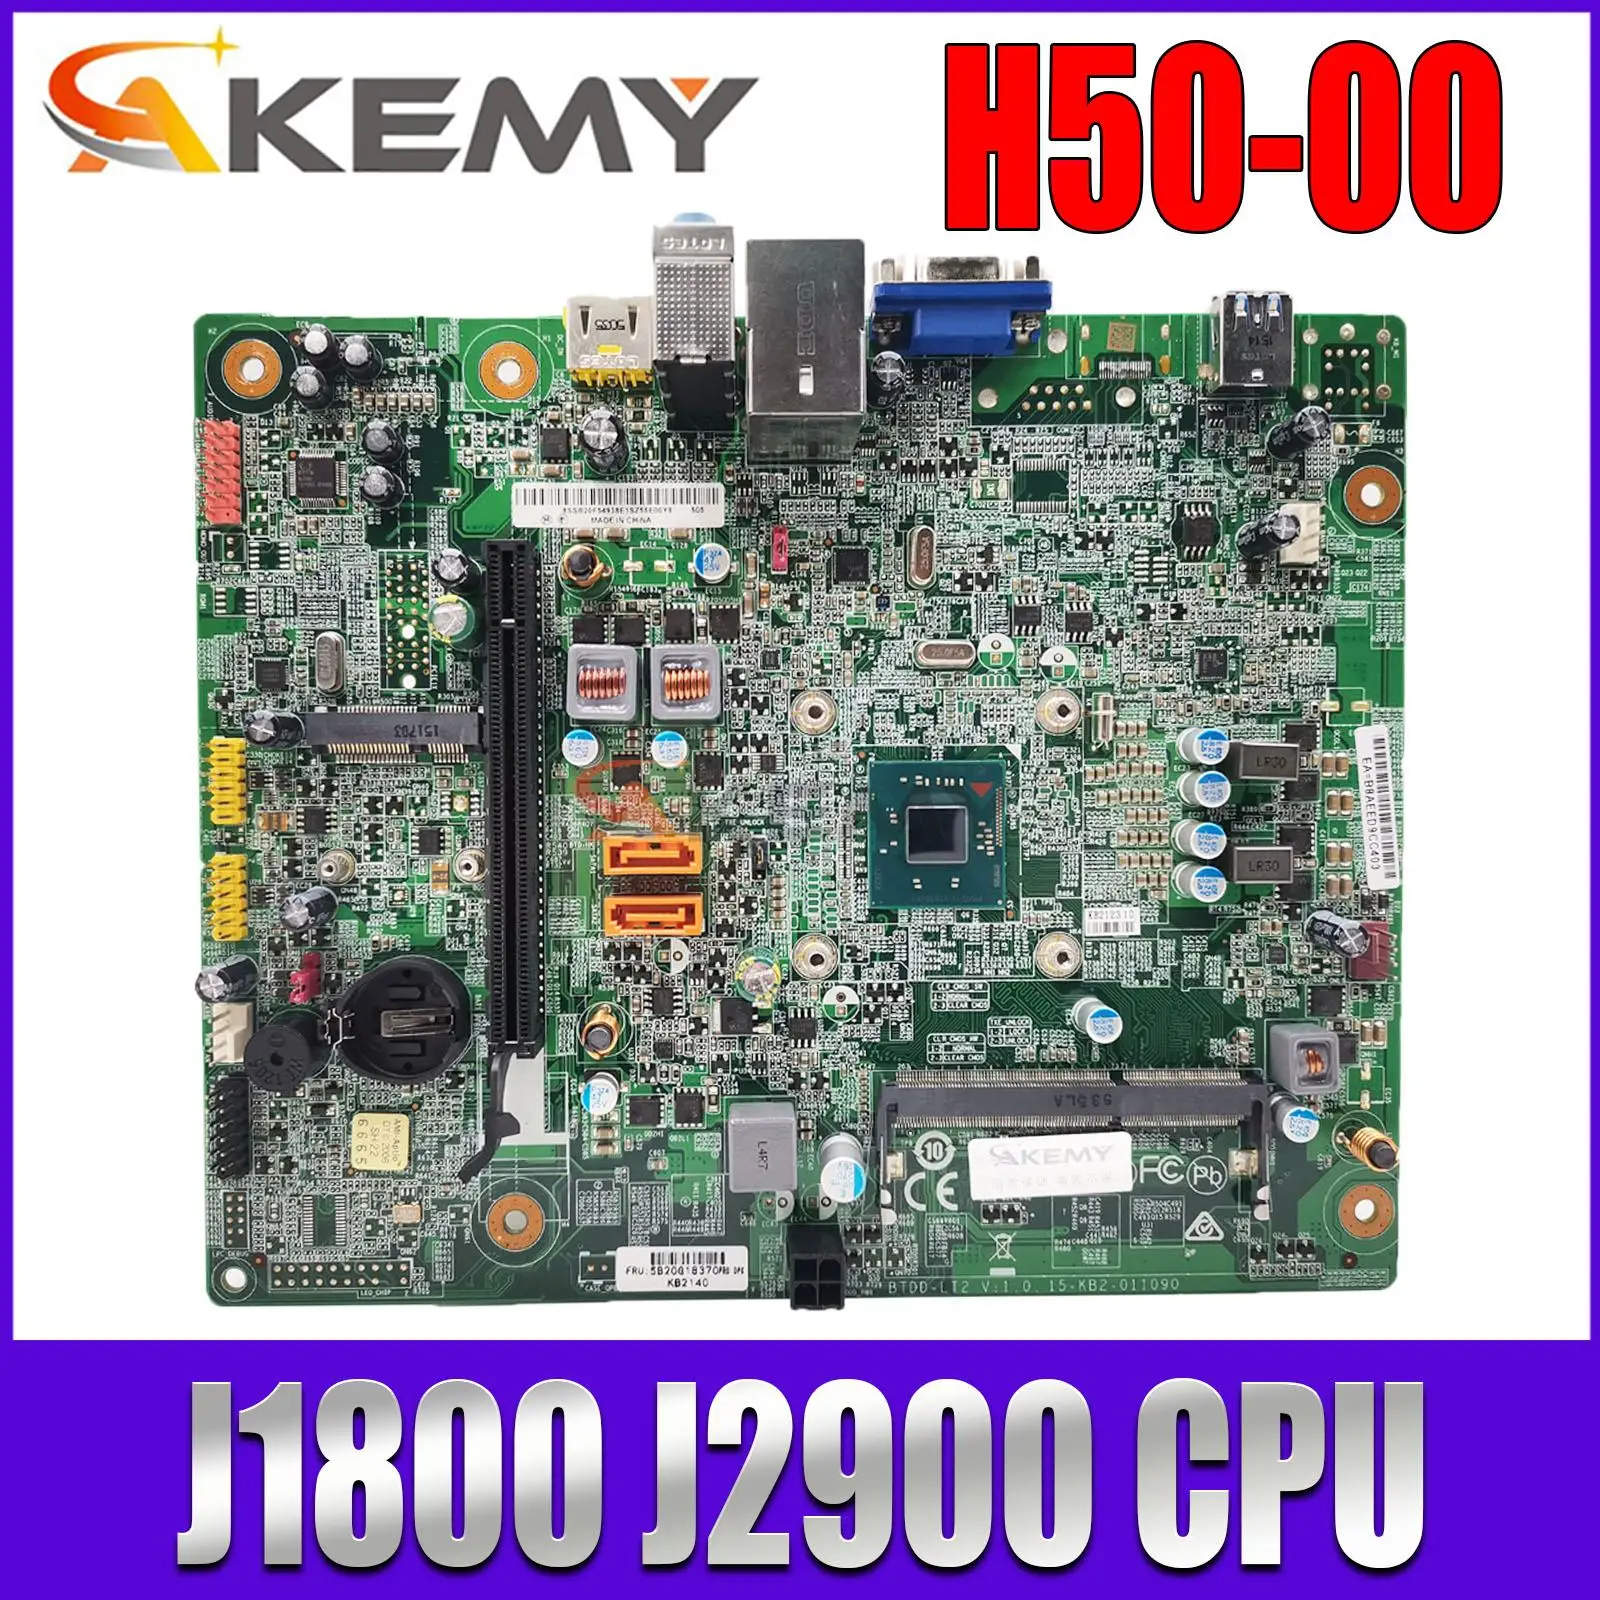 

FOR Lenovo H50-00 D30-00 H30-00 H5000 D3000 H3000 Desktop Motherboard 5B20G18367 BTDD-LT2 15-KB2-011090 With J1800 J2900 CPU